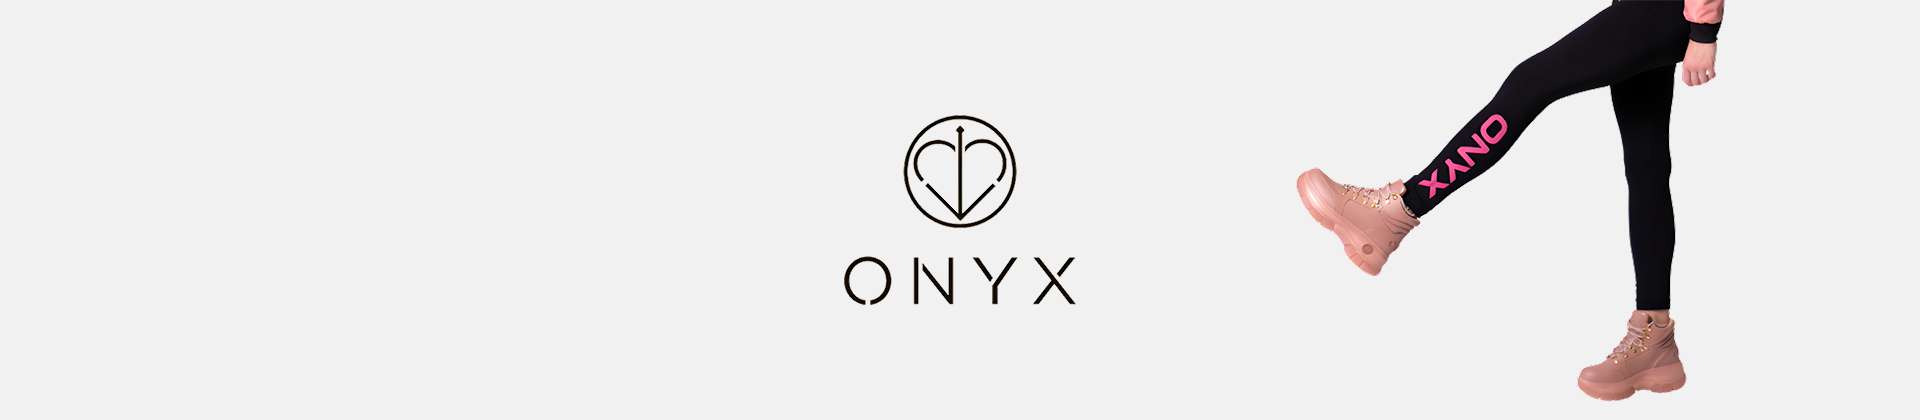 Onyx scarpe Firmate Onyx Online